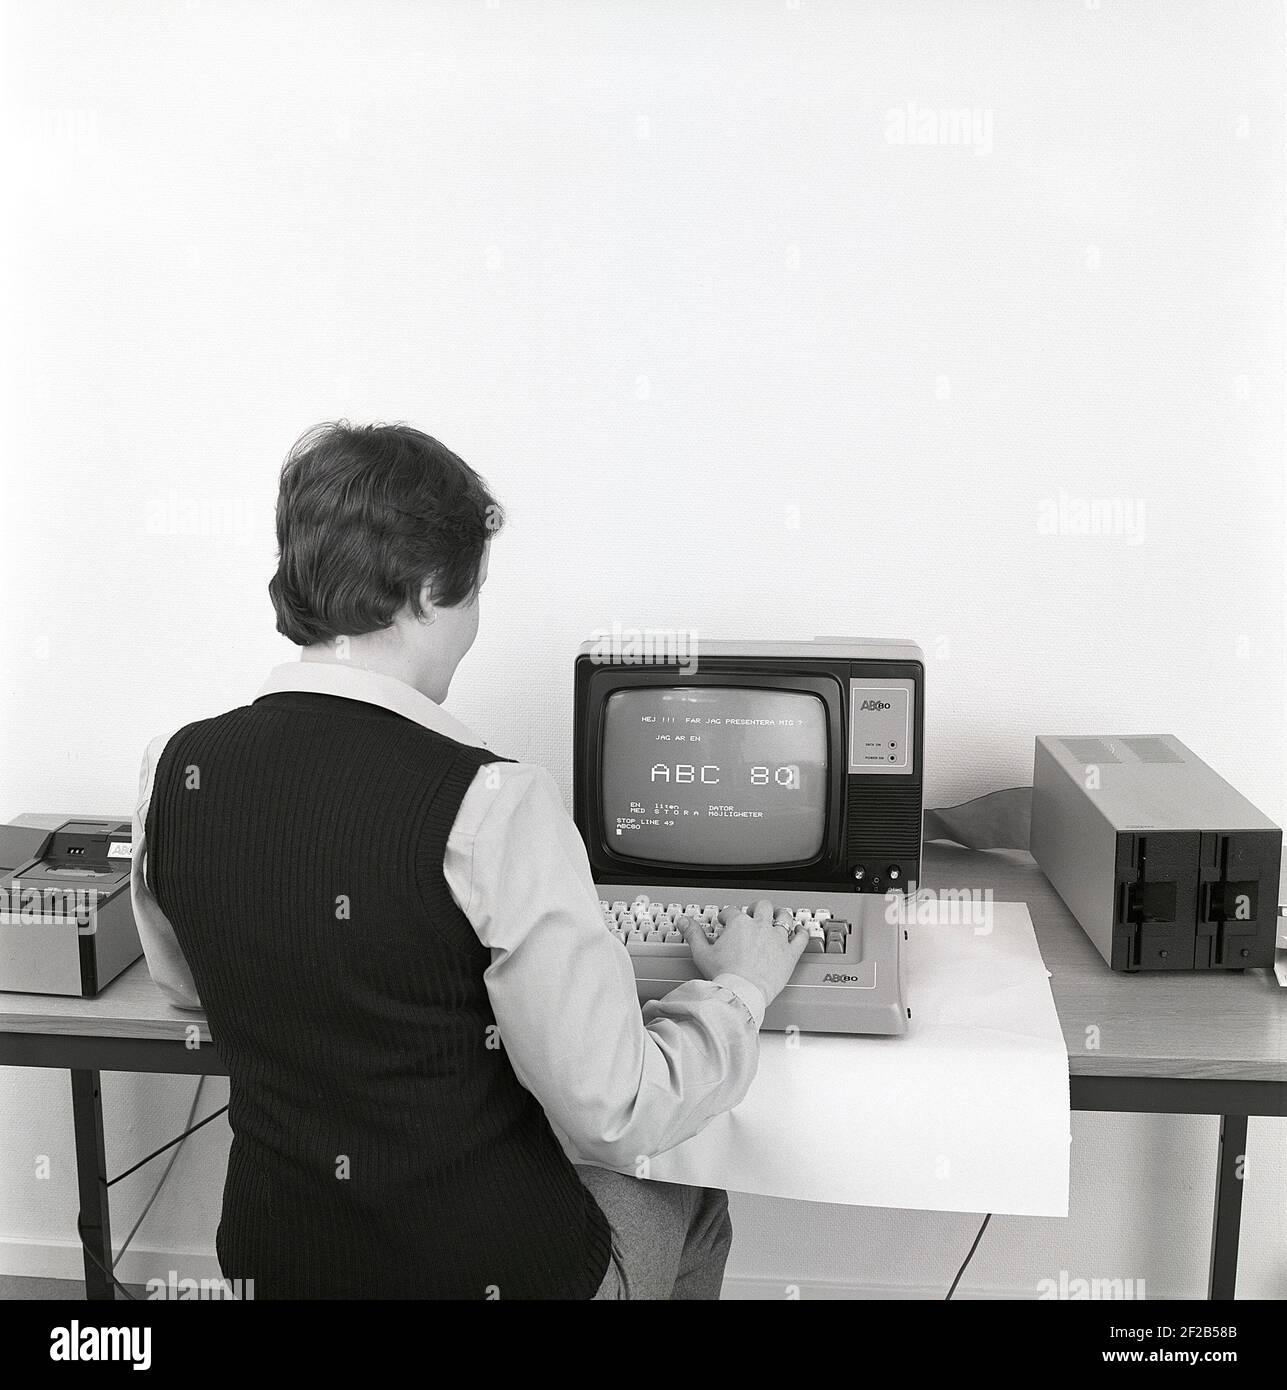 ABC 80. Advanced Basic Computer 80 fue un ordenador personal diseñado por  la corporación sueca Dataindustrier y fabricado por Luxor a finales de  1970s. Fue introducido en el mercado el 24 1978